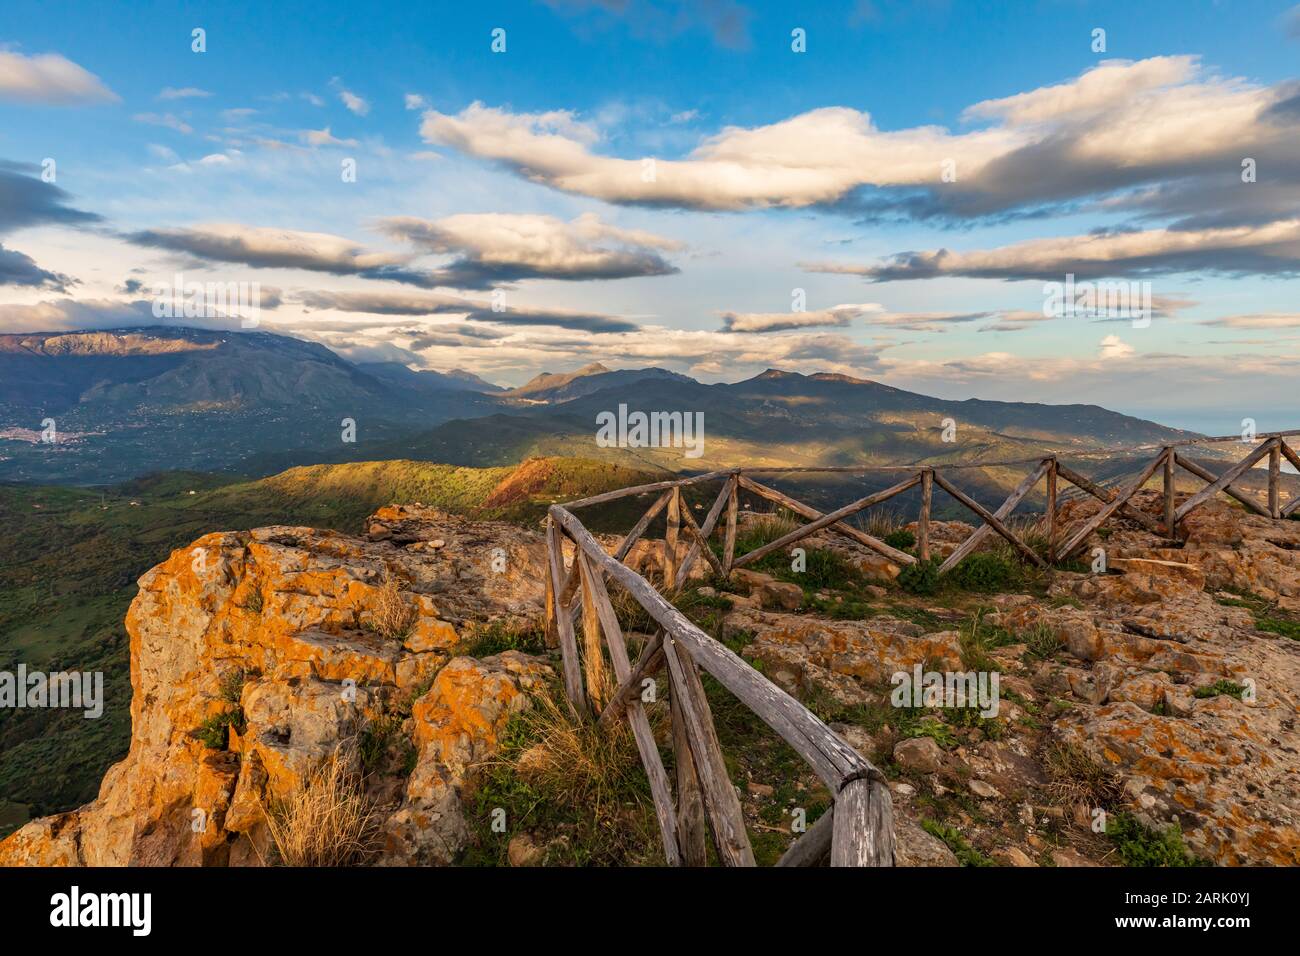 Italien, Sizilien, Provinz Palermo, Pollina. Blick auf die Madonie und den Madonie Regional Natural Park, Teil des UNESCO Global Geoparks Net Stockfoto